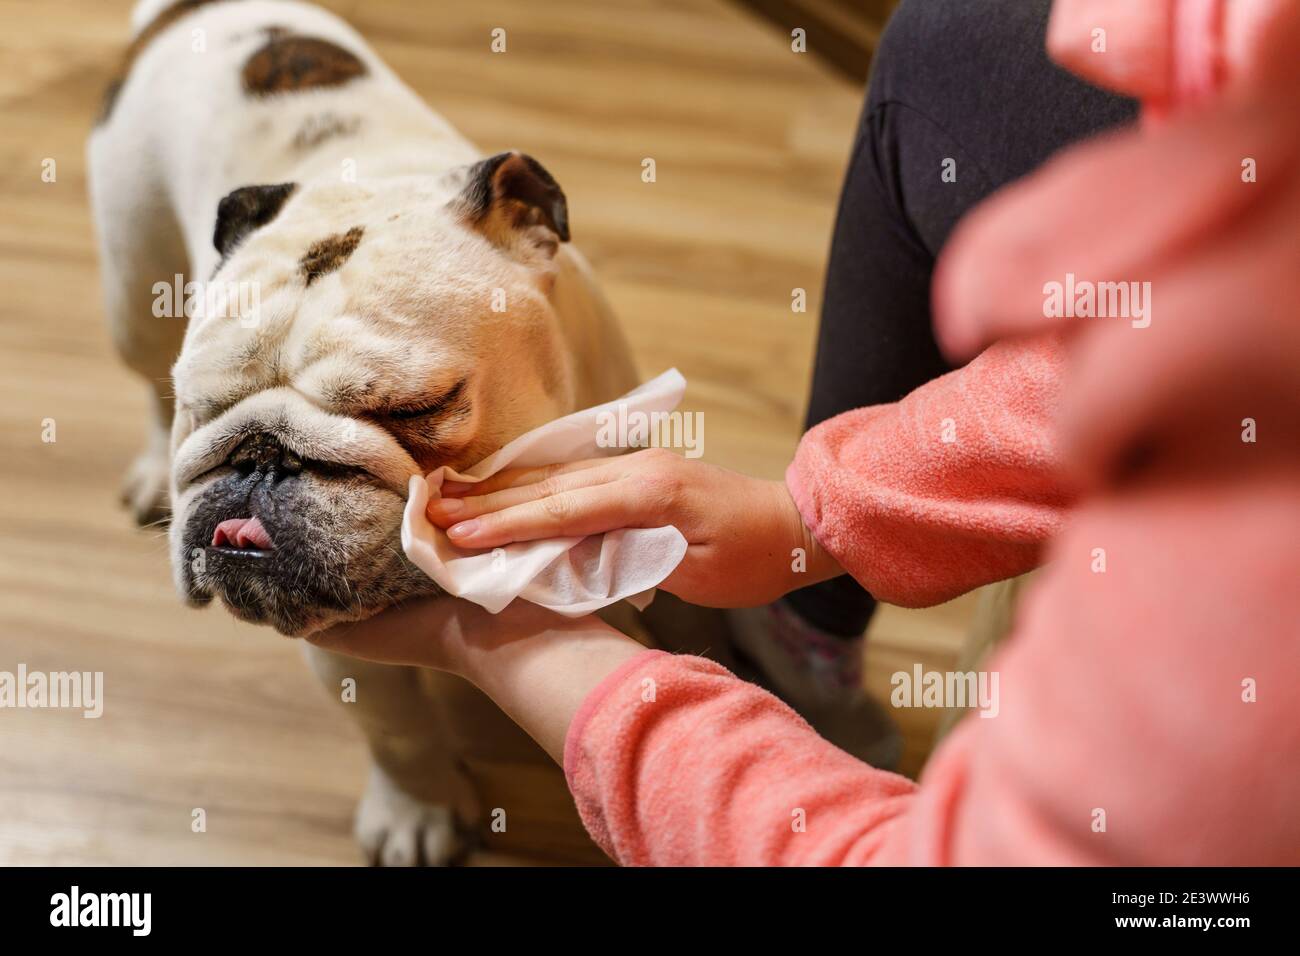 Unbekannte kaukasische Frau kümmert sich um ihren Haustier Hund - Hände von weiblichen Mädchen mit nassen wischen, um den Kopf zu reinigen Von ihrem Haustier erwachsenen älteren englischen Bulldogge Stockfoto